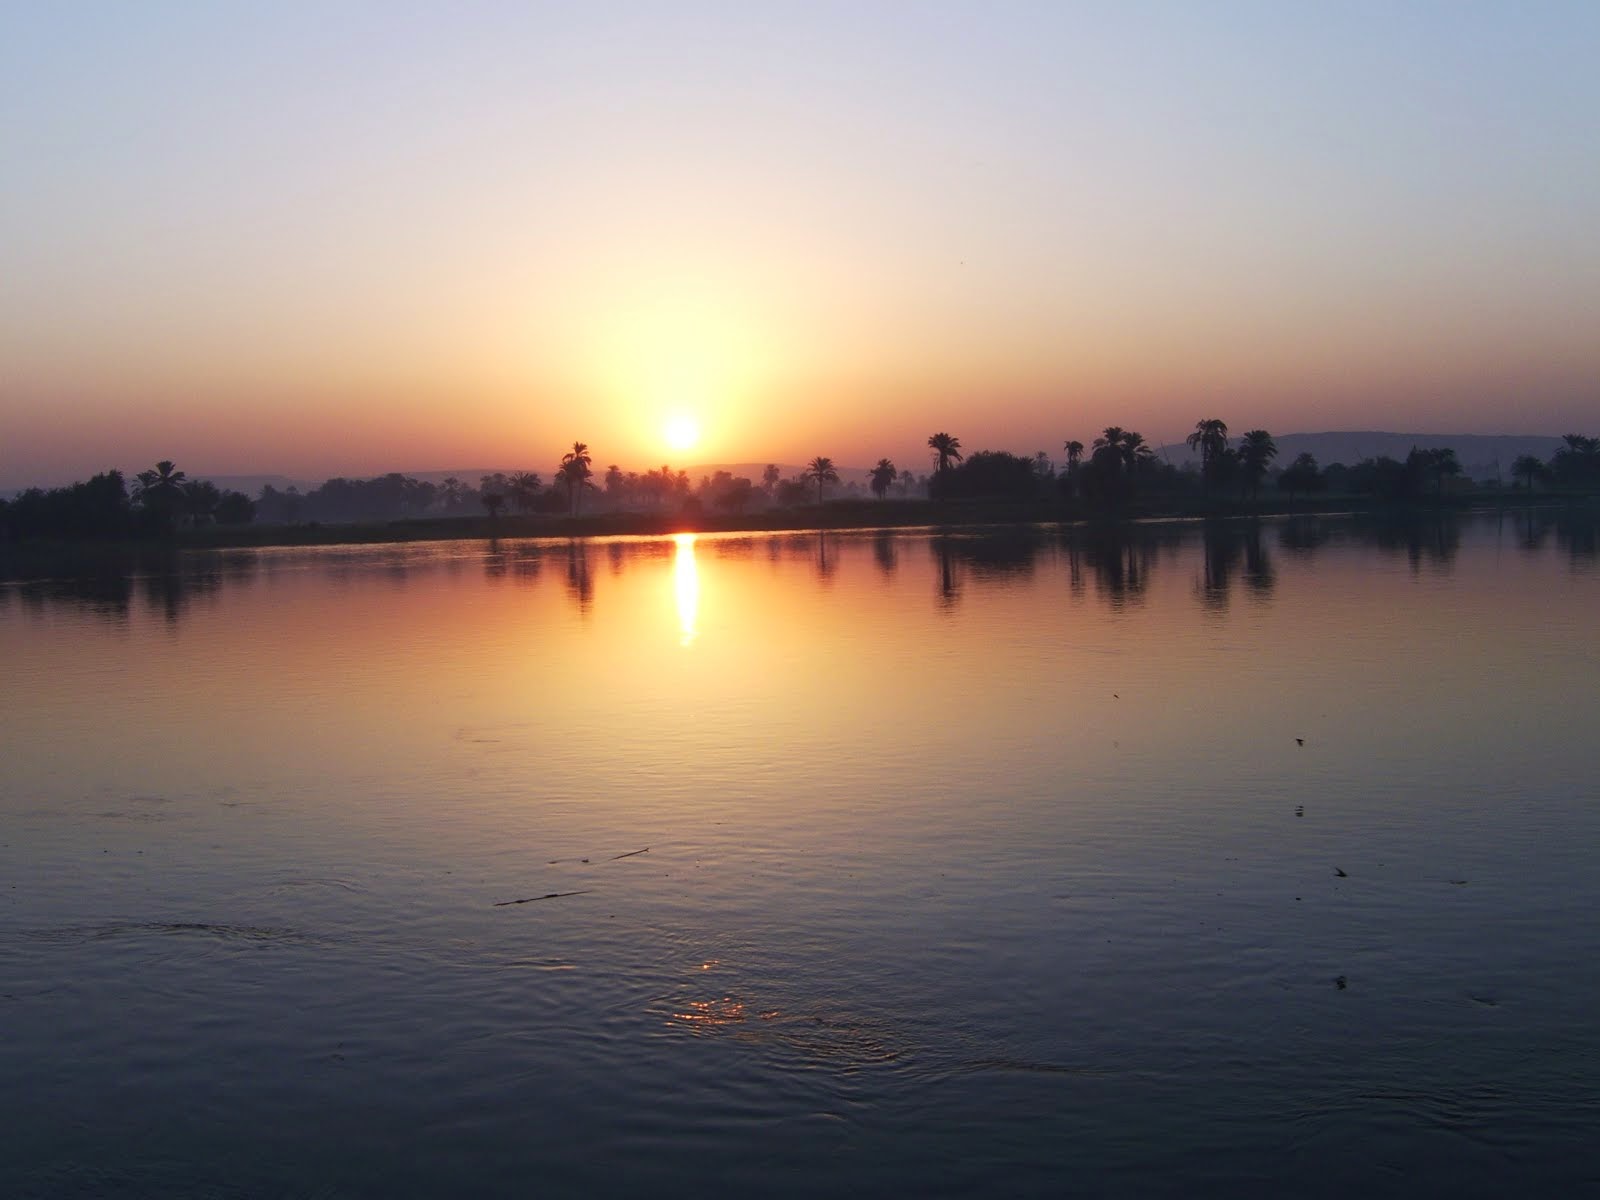 لحظة شروق الشمس على نهر النيل بمدينة ملوى